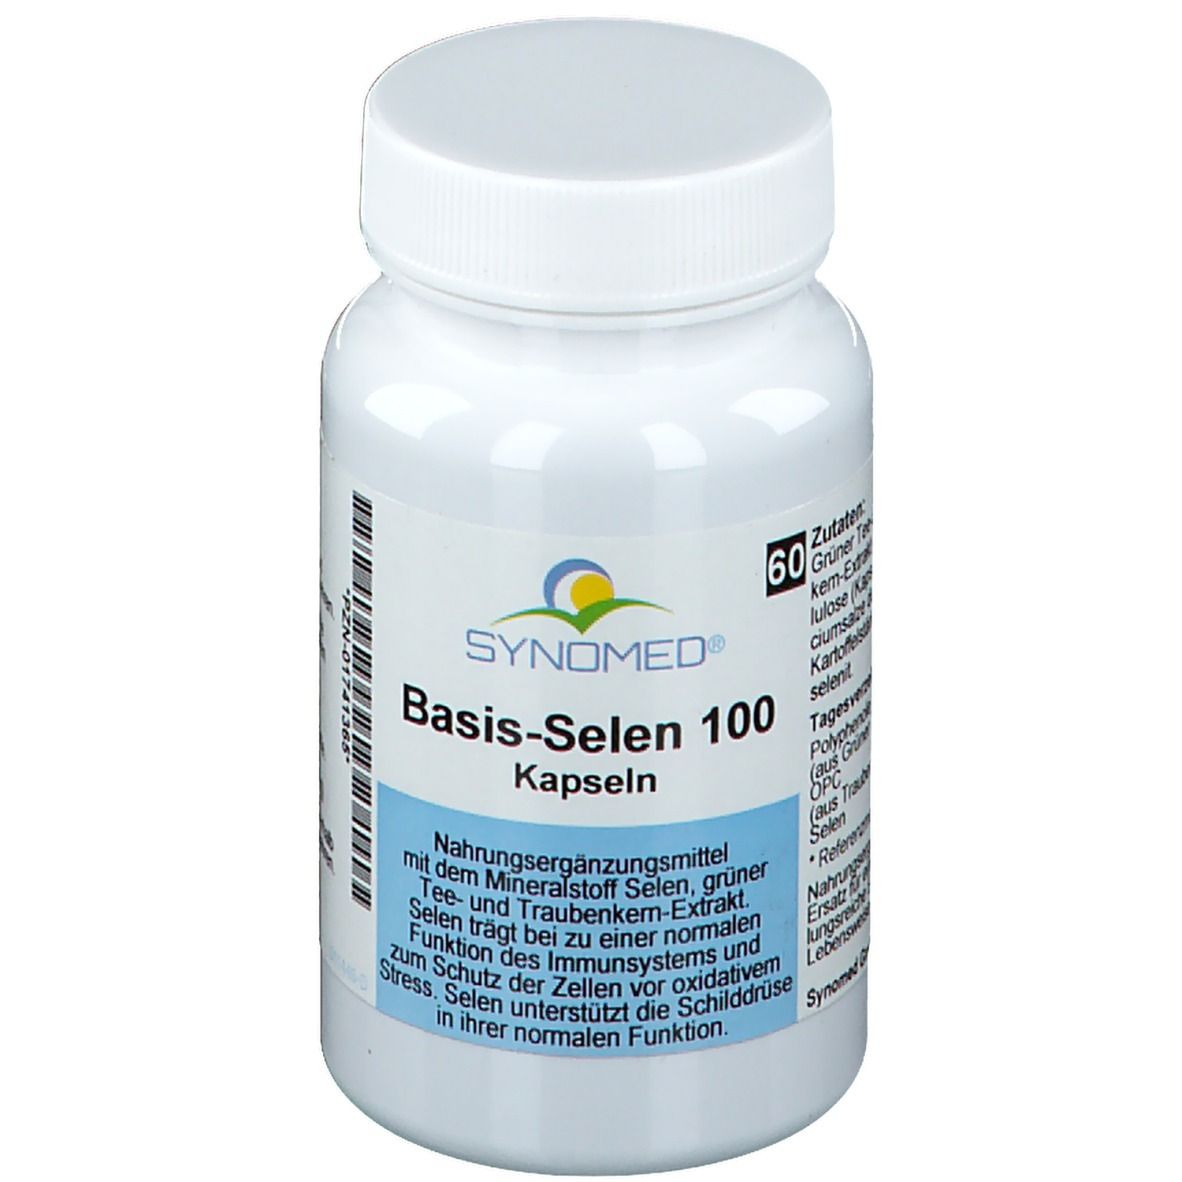 SYNOMED Basis-Selen 100